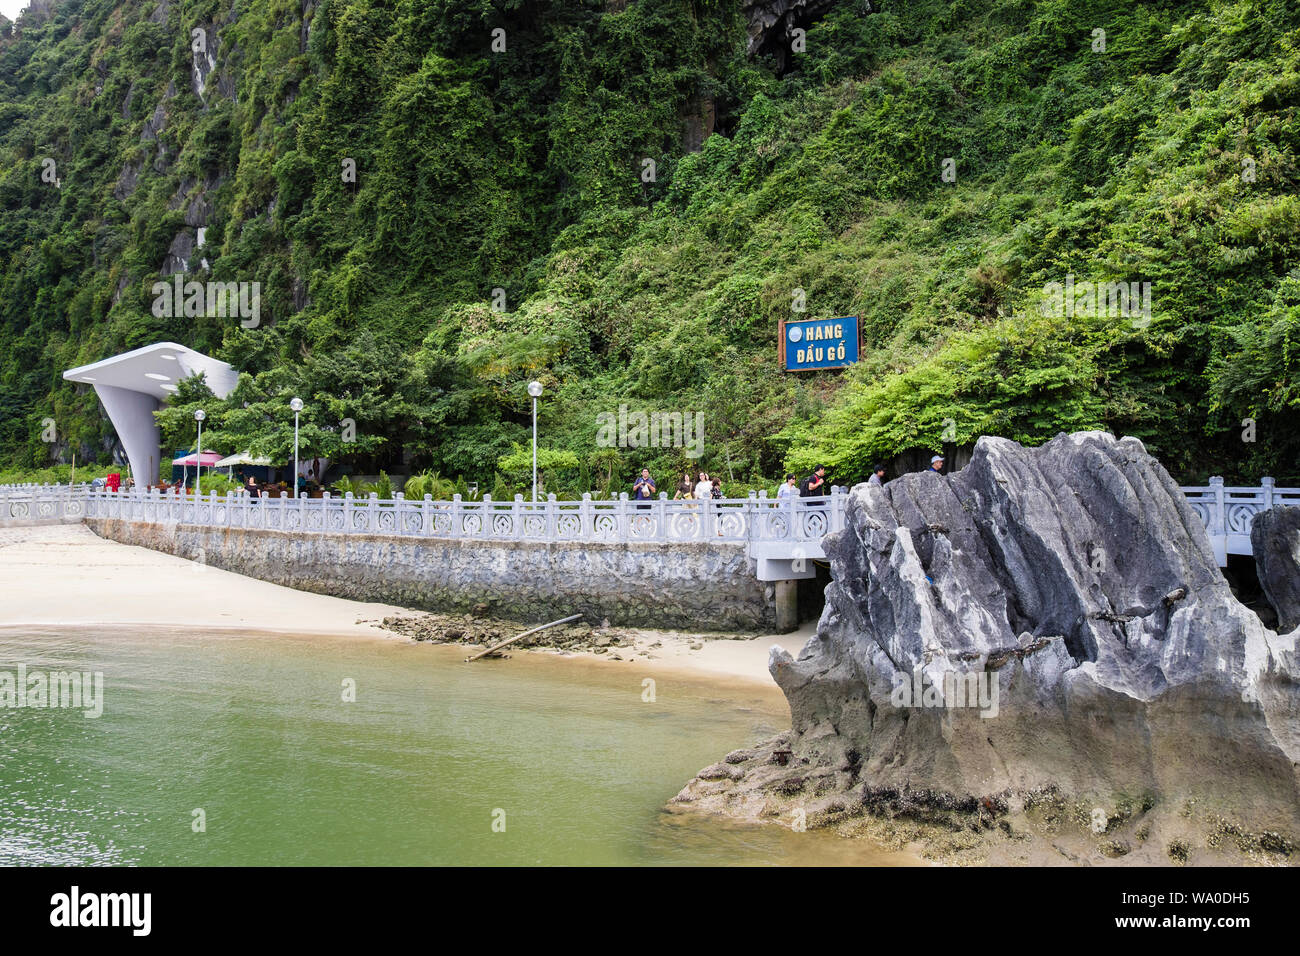 Les touristes revenant de l'allée avec visite de la grotte Dau Go Hang Dau Go sur l'île. La baie d'Halong en mer de Chine du Sud. Vietnam, Asie Banque D'Images